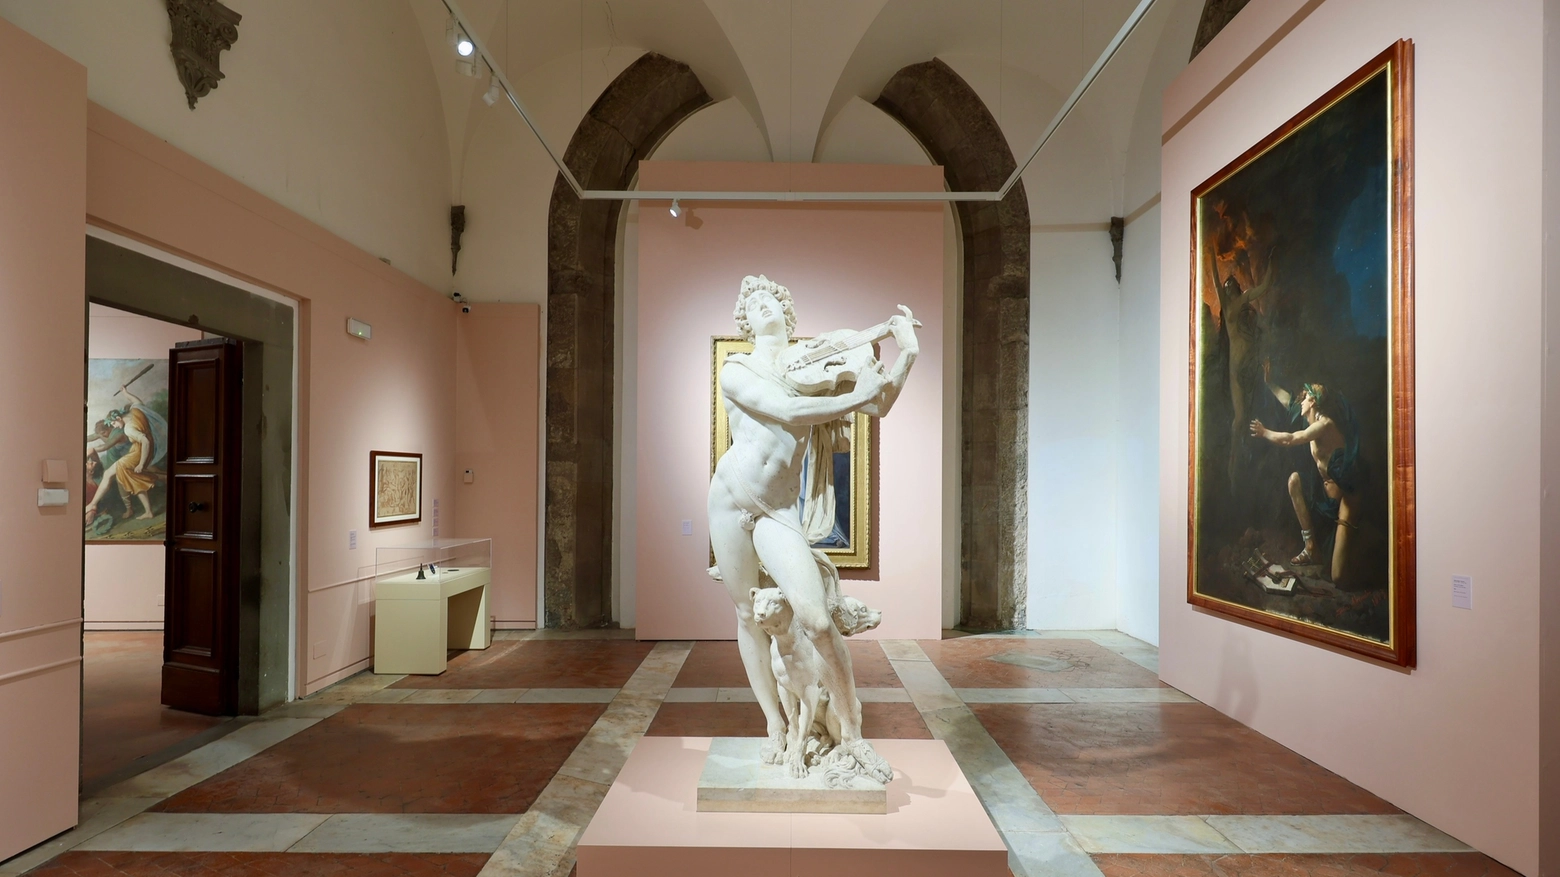 Il 7 aprile tutti i residenti della Città Metropolitana di Firenze avranno la possibilità di visitare gratuitamente i Musei Civici Fiorentini e Palazzo Medici Riccardi